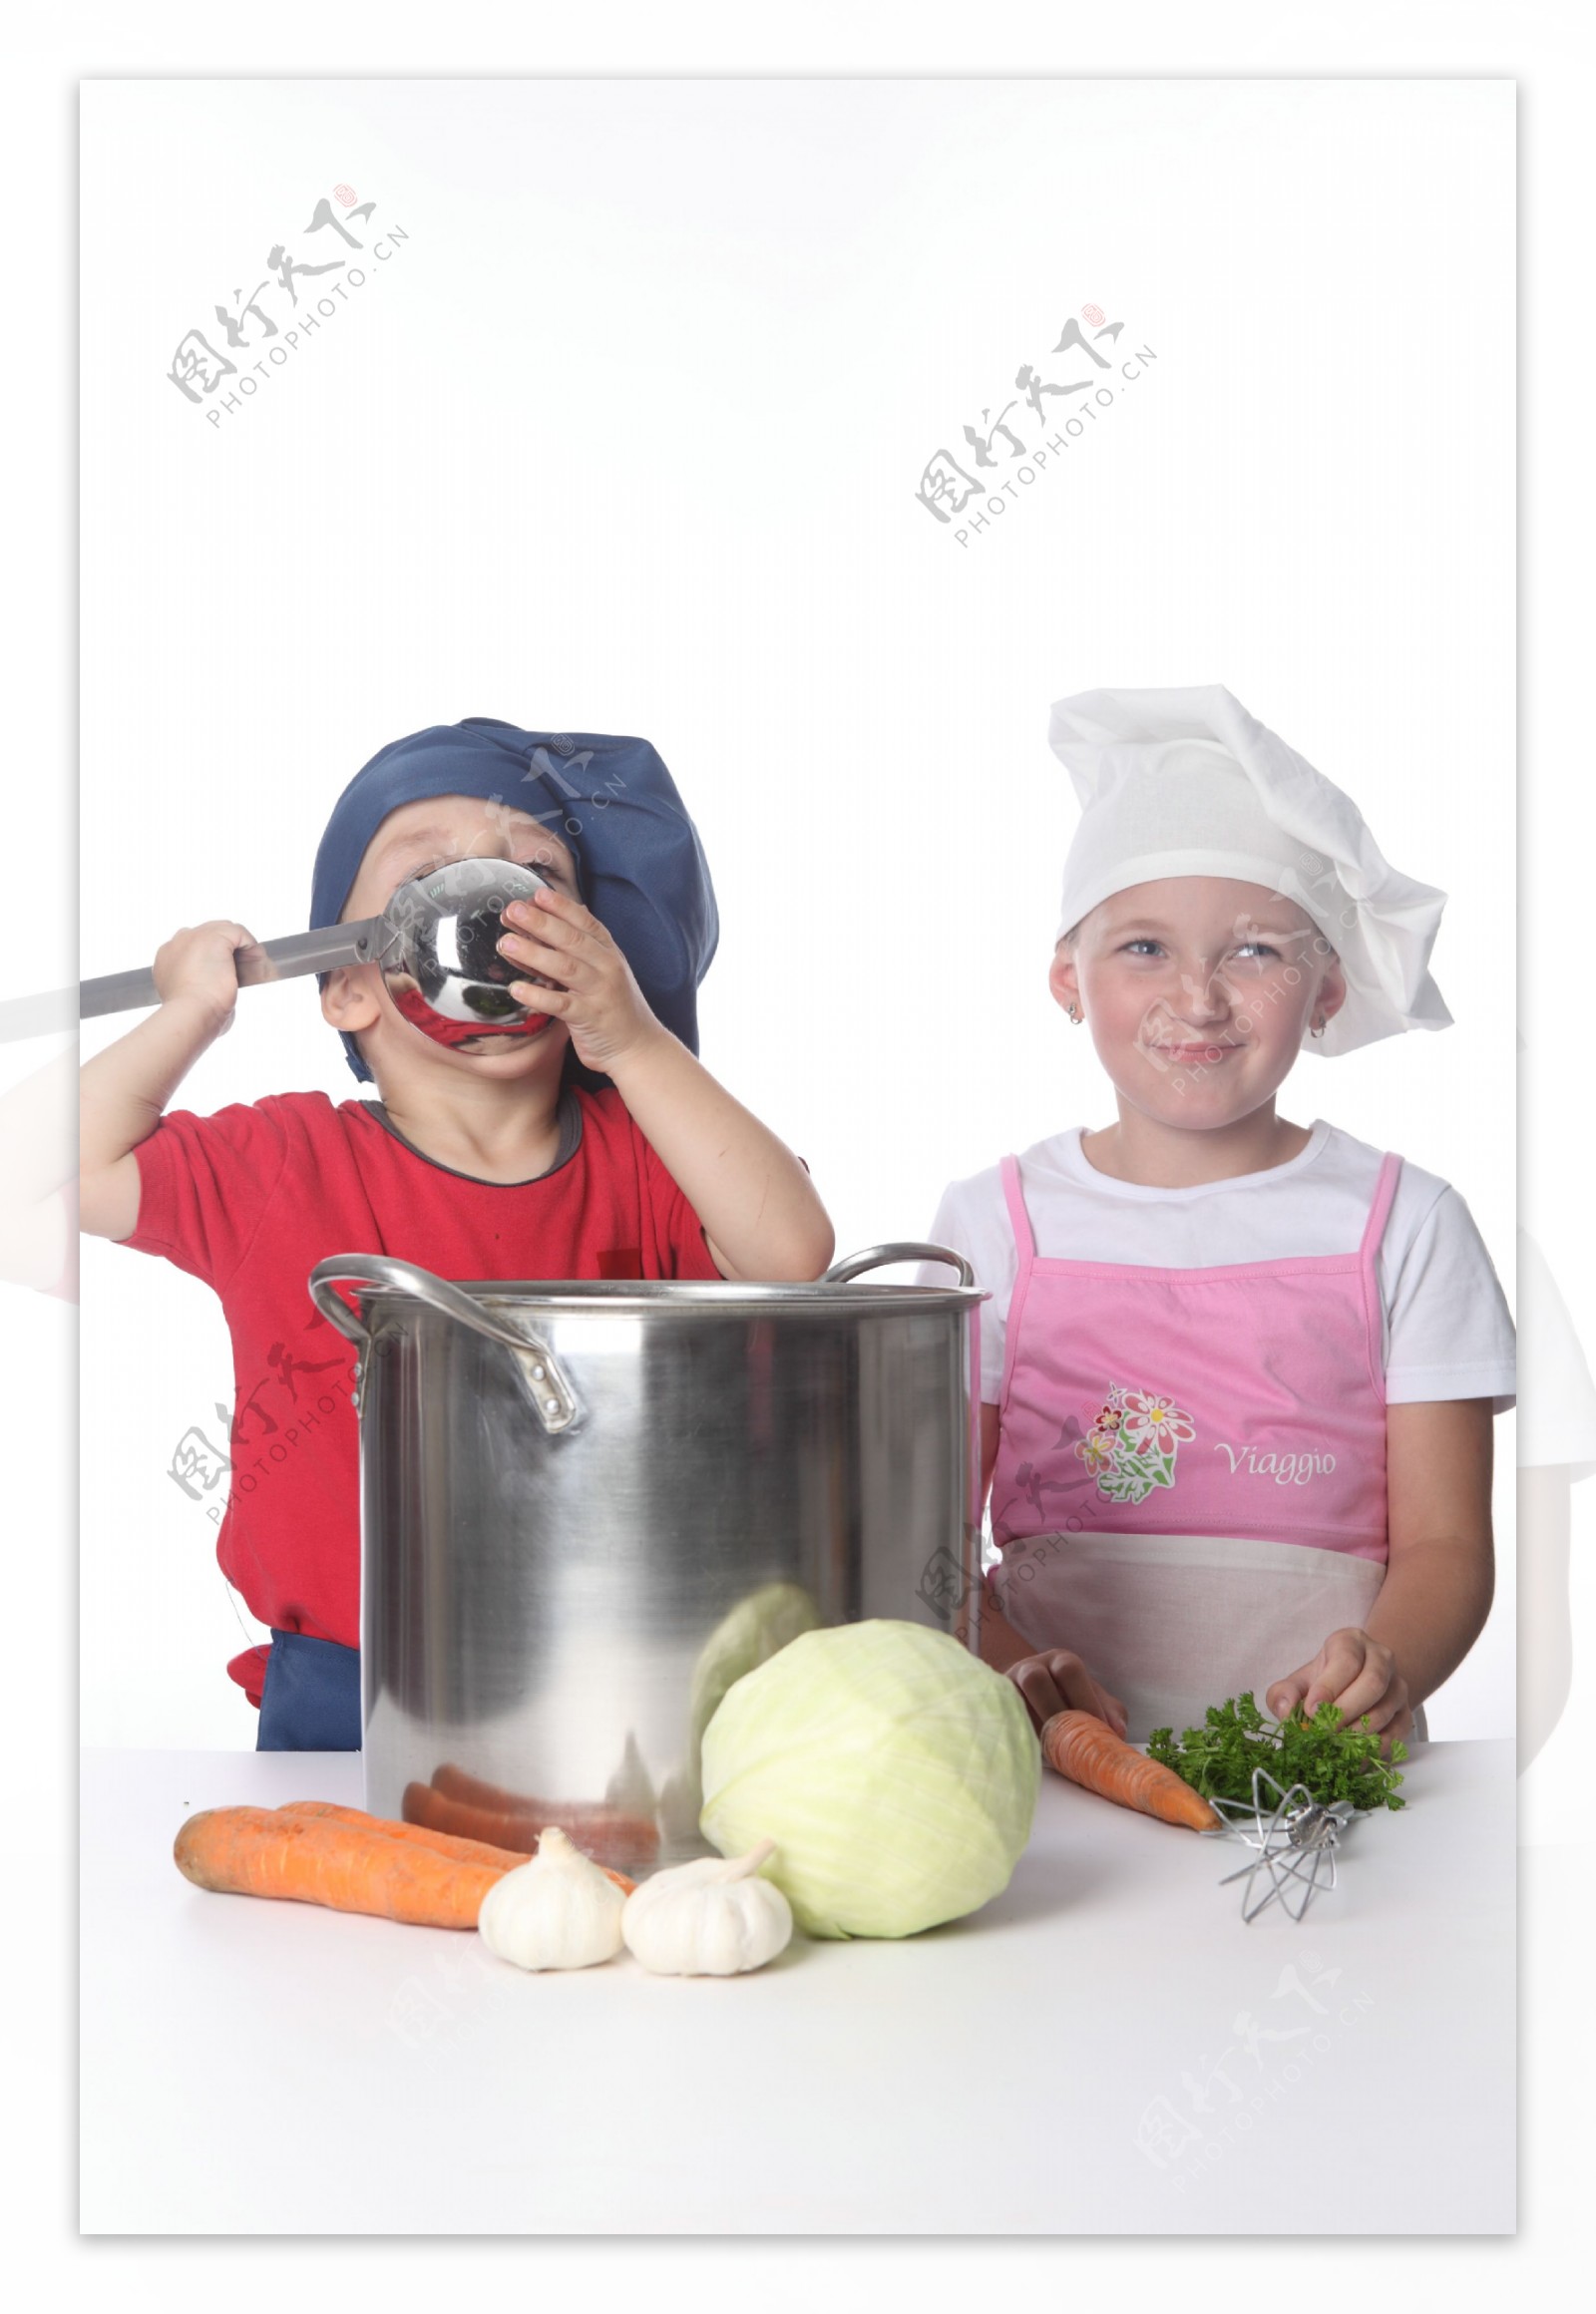 可爱儿童厨师图片